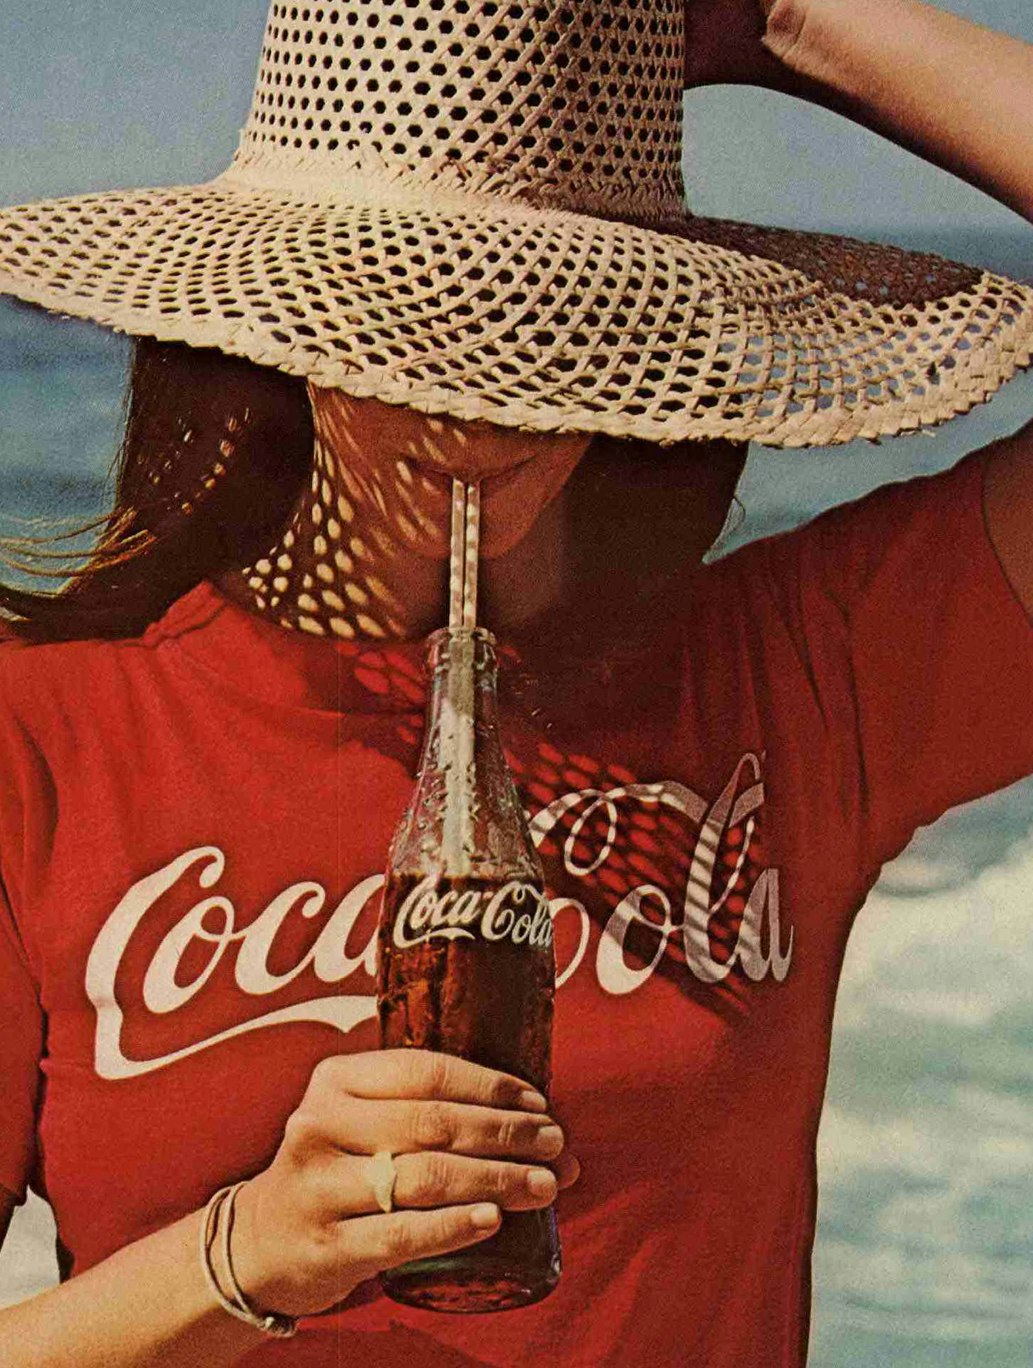 Coca-Cola udskifter 130 år gammel logo